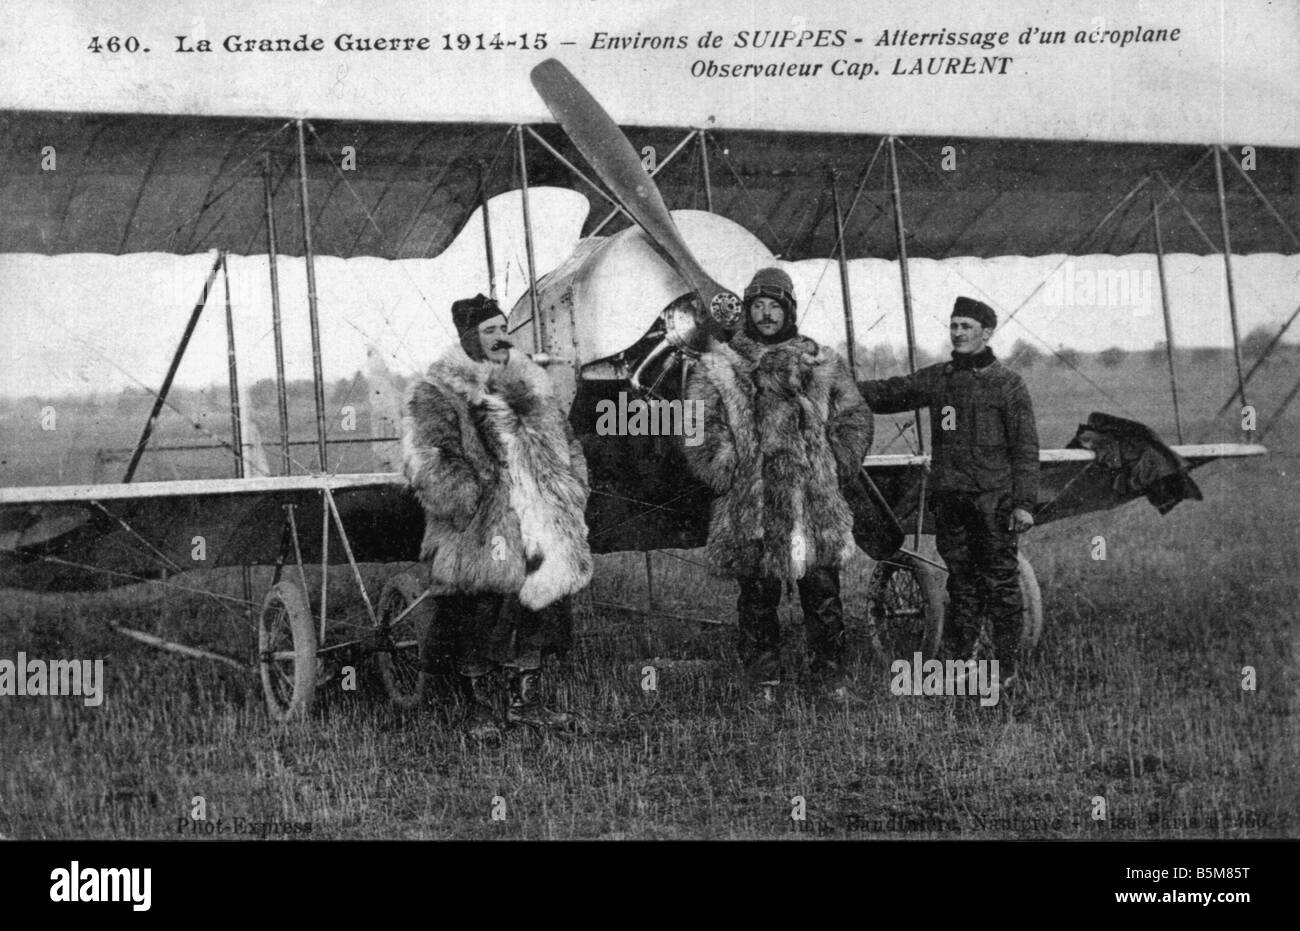 2 G55 B1 19156 E French aerial recon Histoire de l'avion de la guerre aérienne de la Première Guerre Mondiale La Grande Guerre 1914 15 Environs de Suippes Banque D'Images